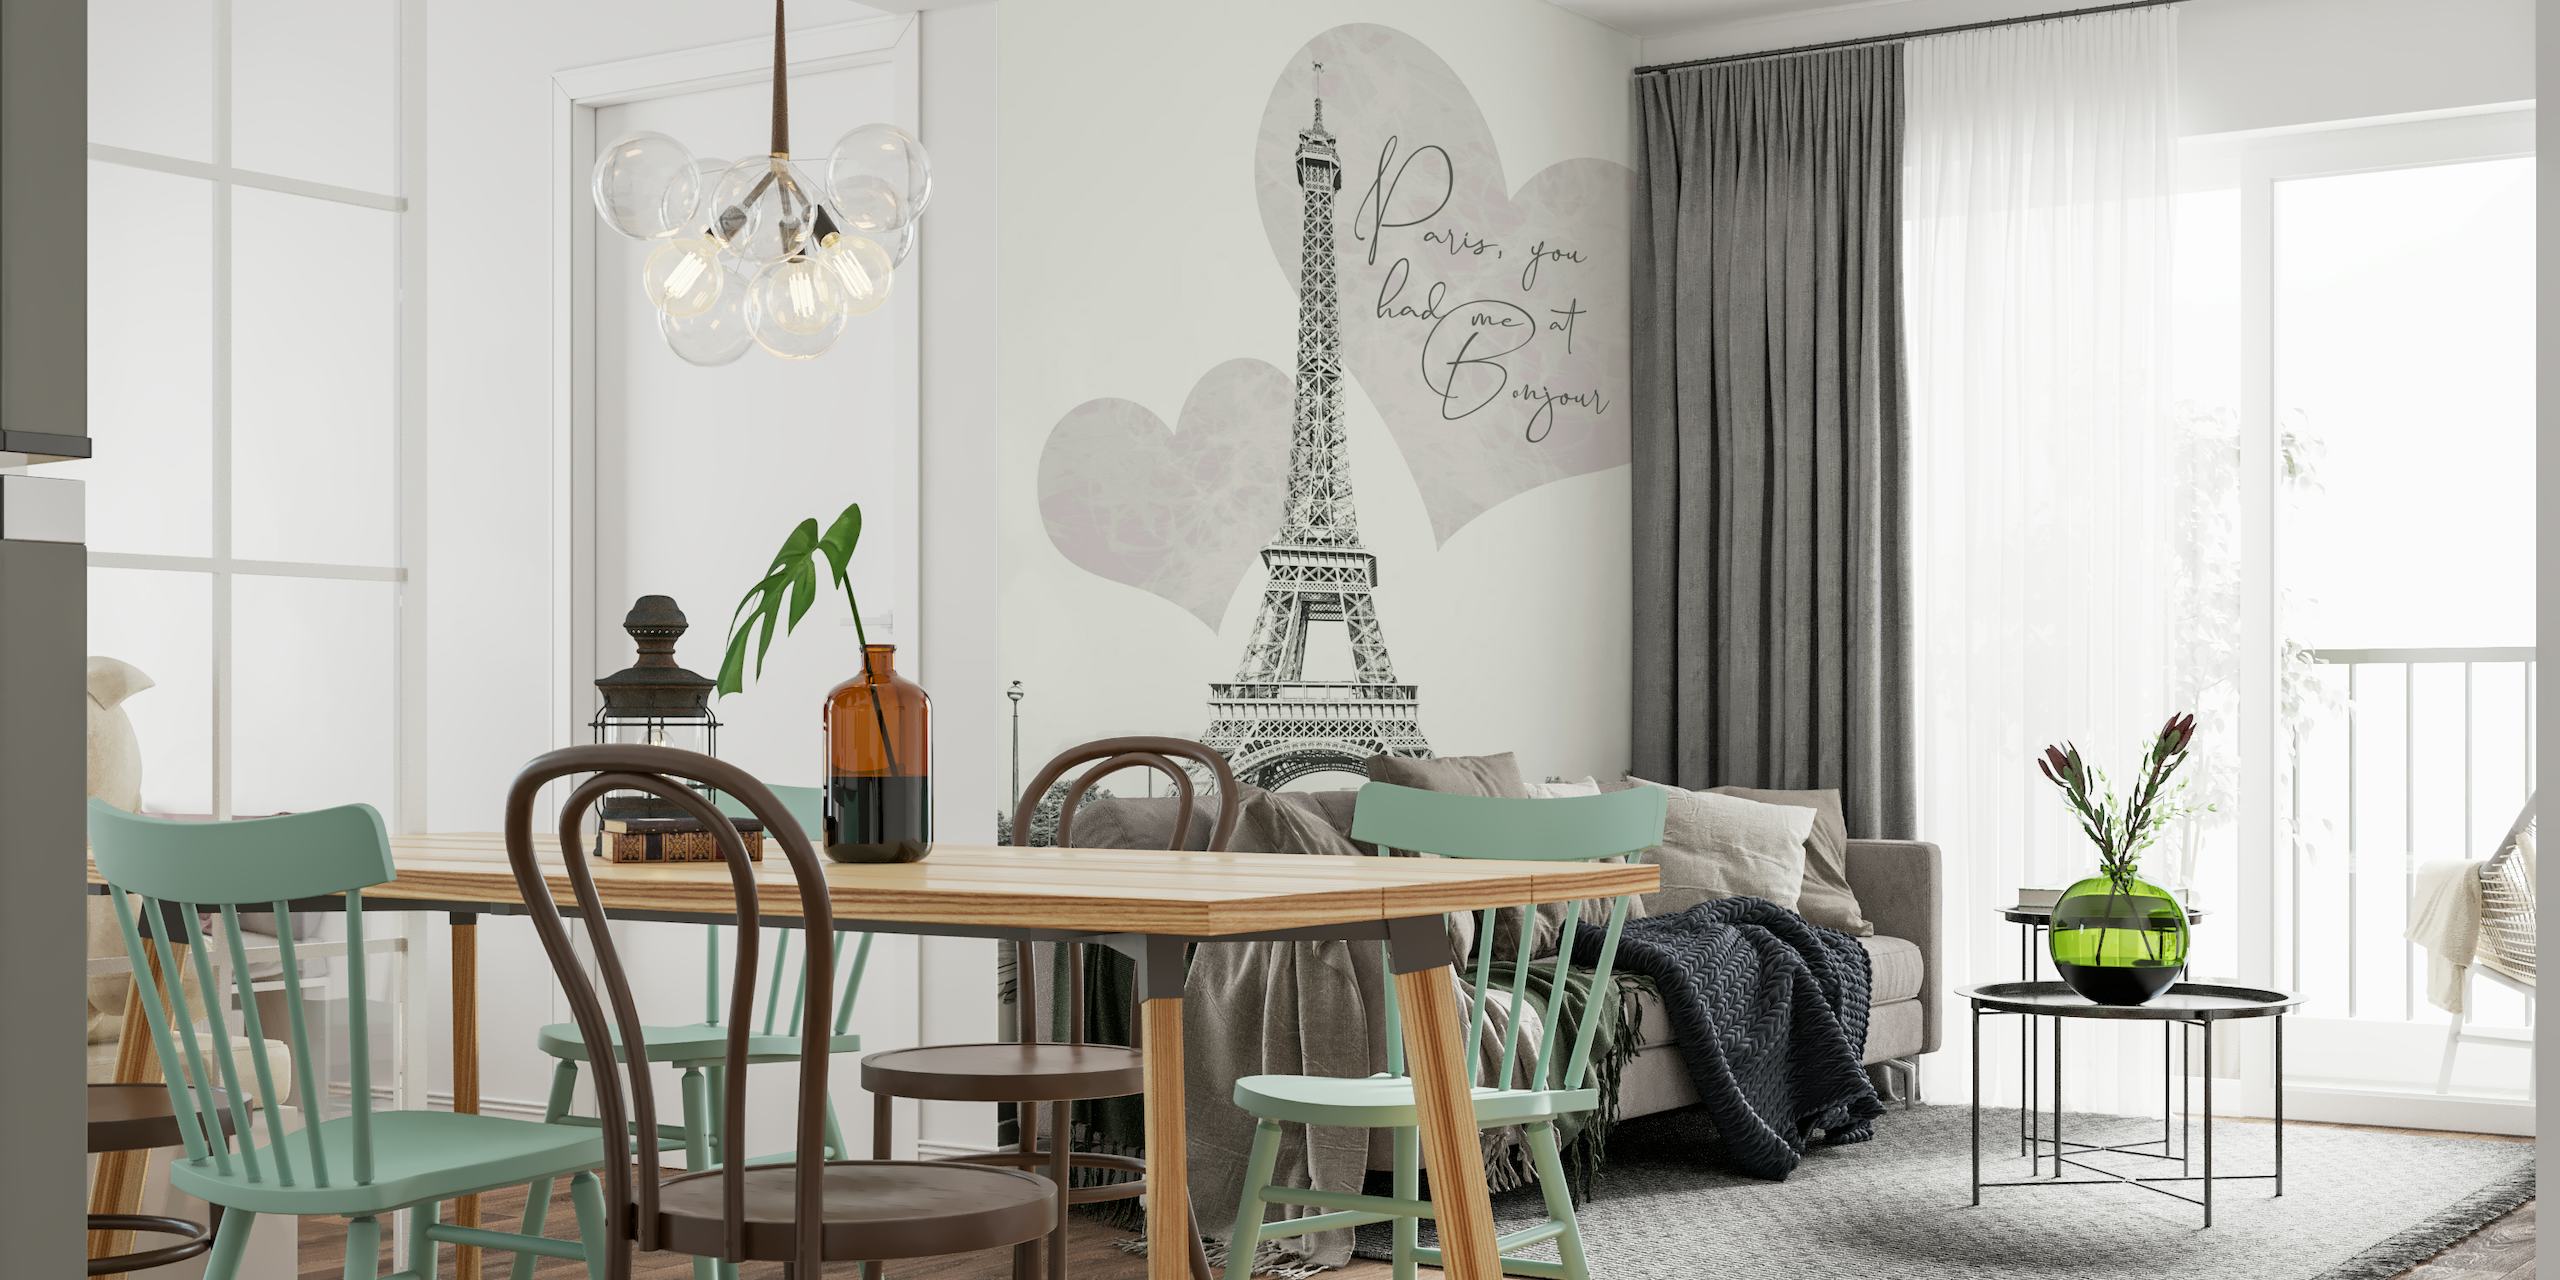 Eiffeltårnet med romantiske hjerteformer og "Paris, du hadde meg på BONJOUR" sitat veggmaleri